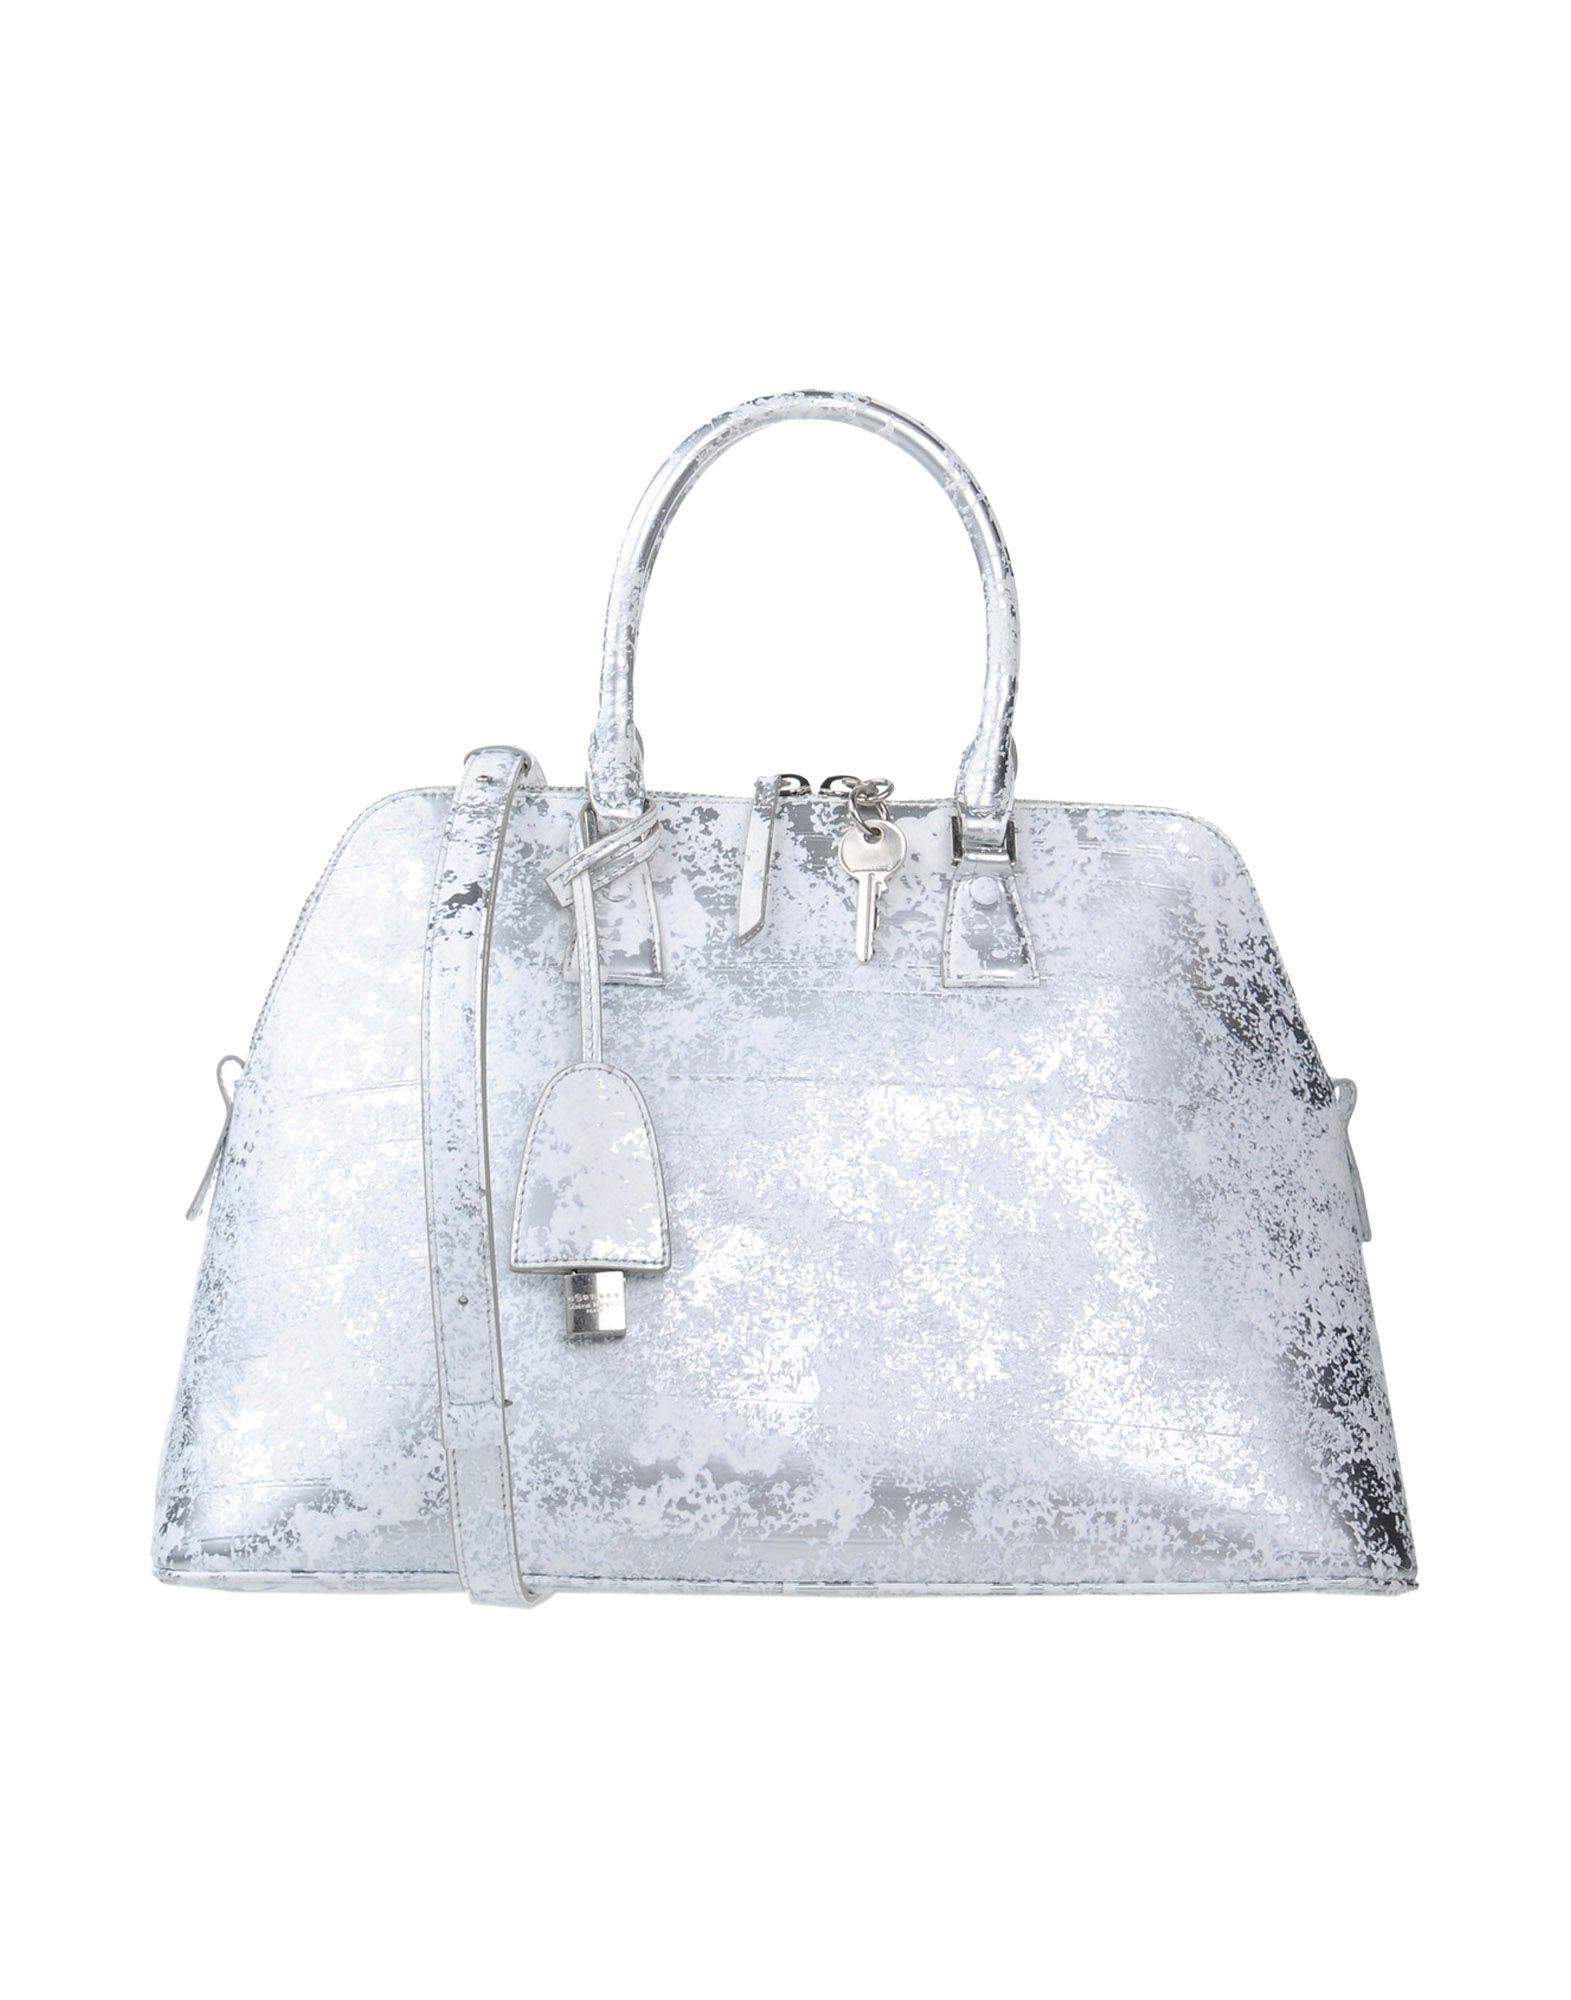 Maison Margiela Handbag In White | ModeSens